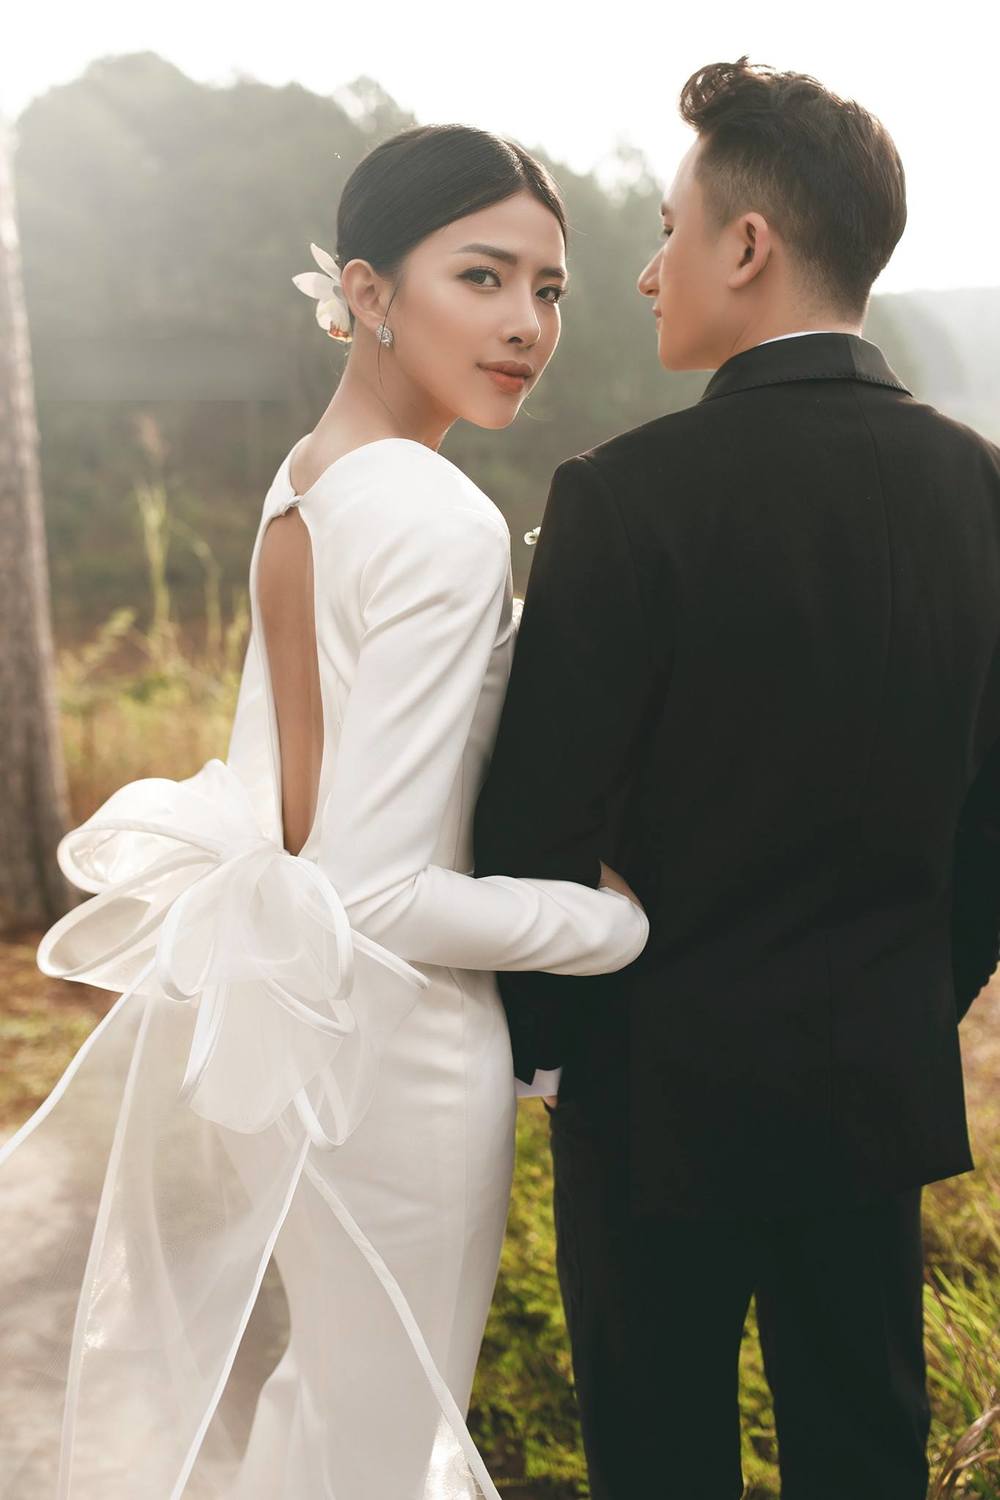 Bạn đang tìm kiếm hình ảnh ảnh cưới đẹp để cảm nhận được tình yêu đích thực của các cô dâu và chú rể? Hãy xem hình ảnh Phan Mạnh Quỳnh và cô dâu xinh lung linh trong ngày trọng đại của họ!